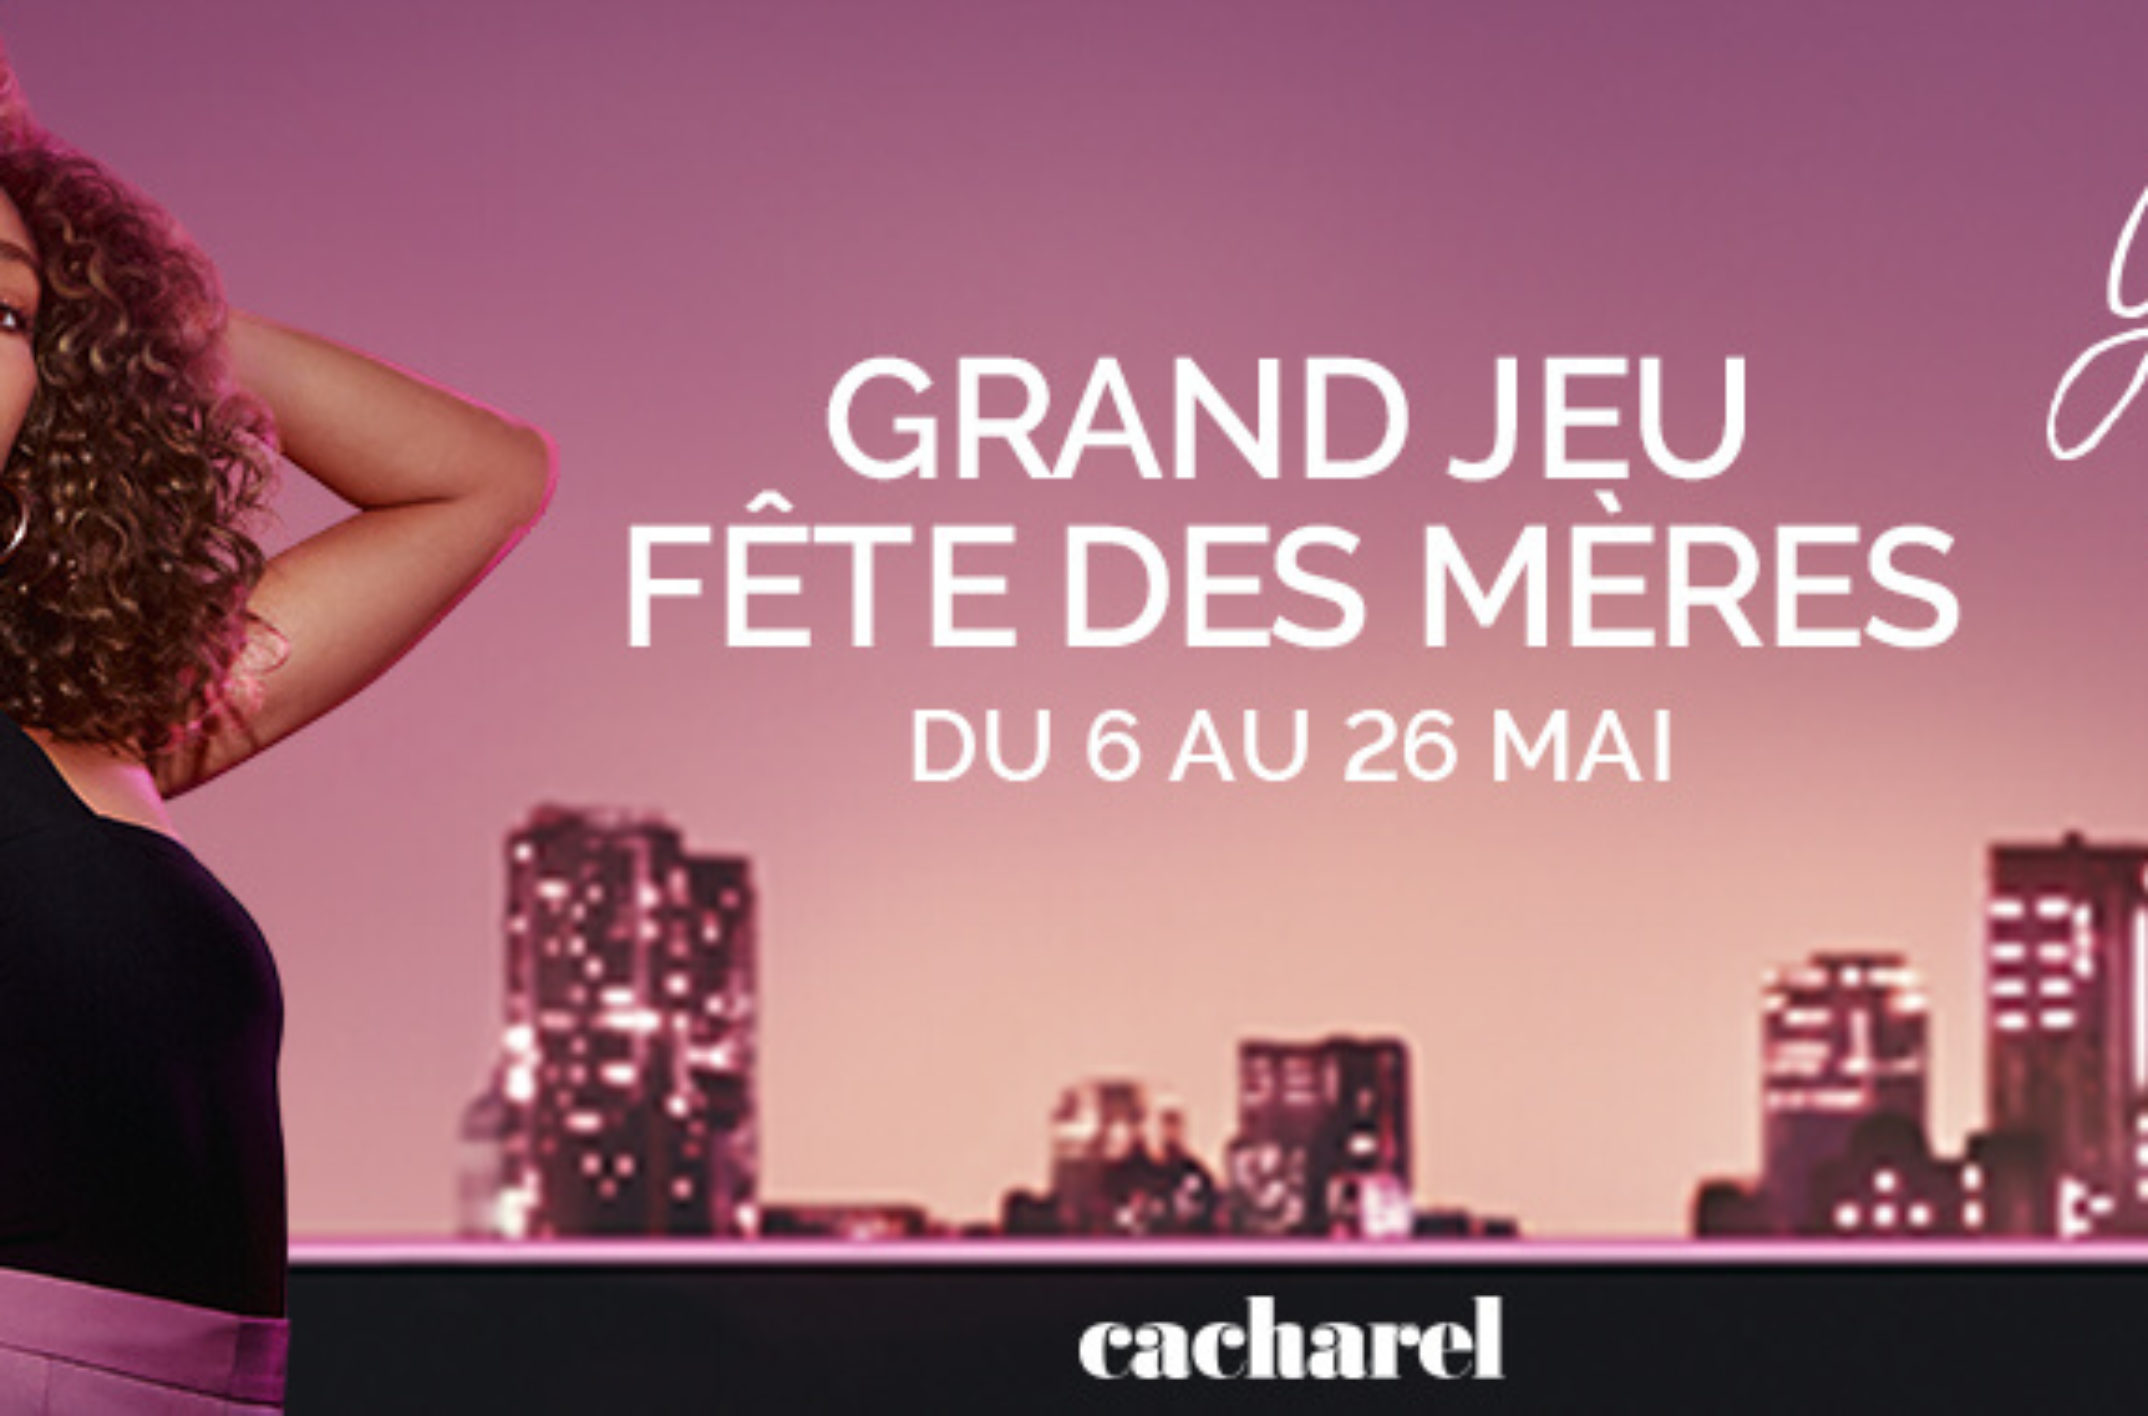 Grand jeu Fête des Mères Cacharel : 5 Box + 10 parfums à gagner sur passionbeaute.fr